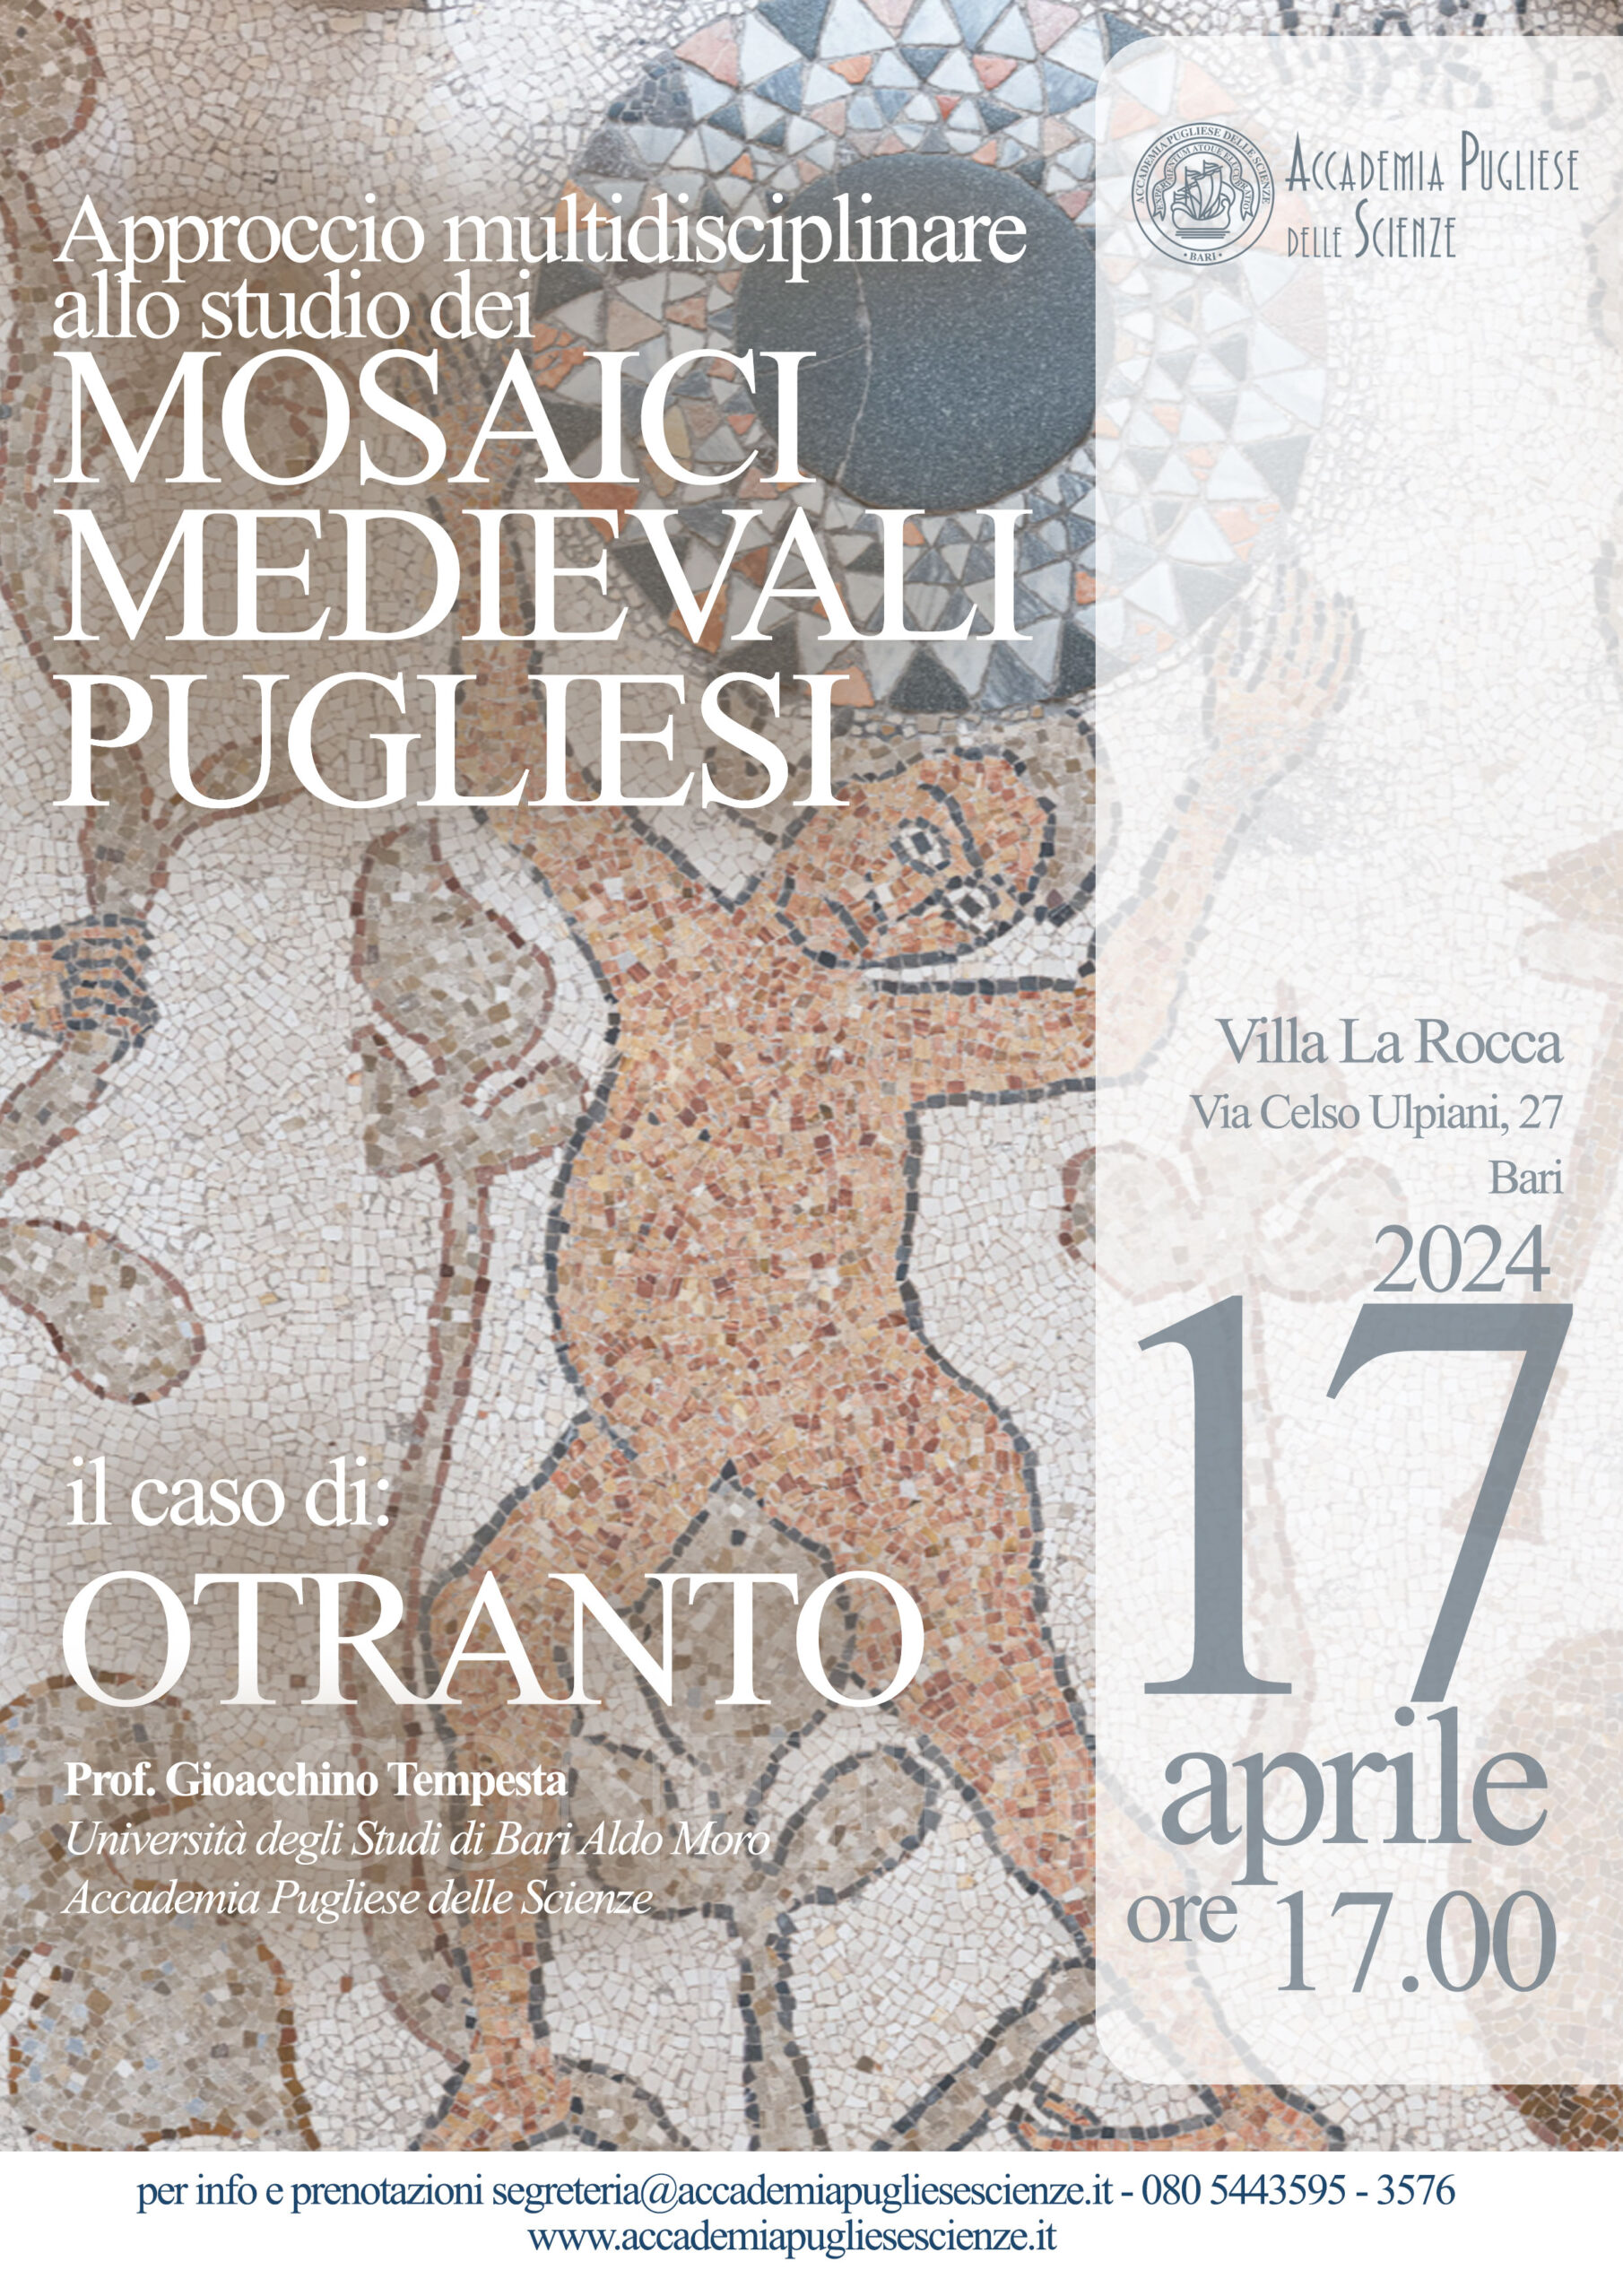 Mosaici Medievali Pugliesi – Otranto – 17 aprile 2024 – Accademia Pugliese delle Scienze